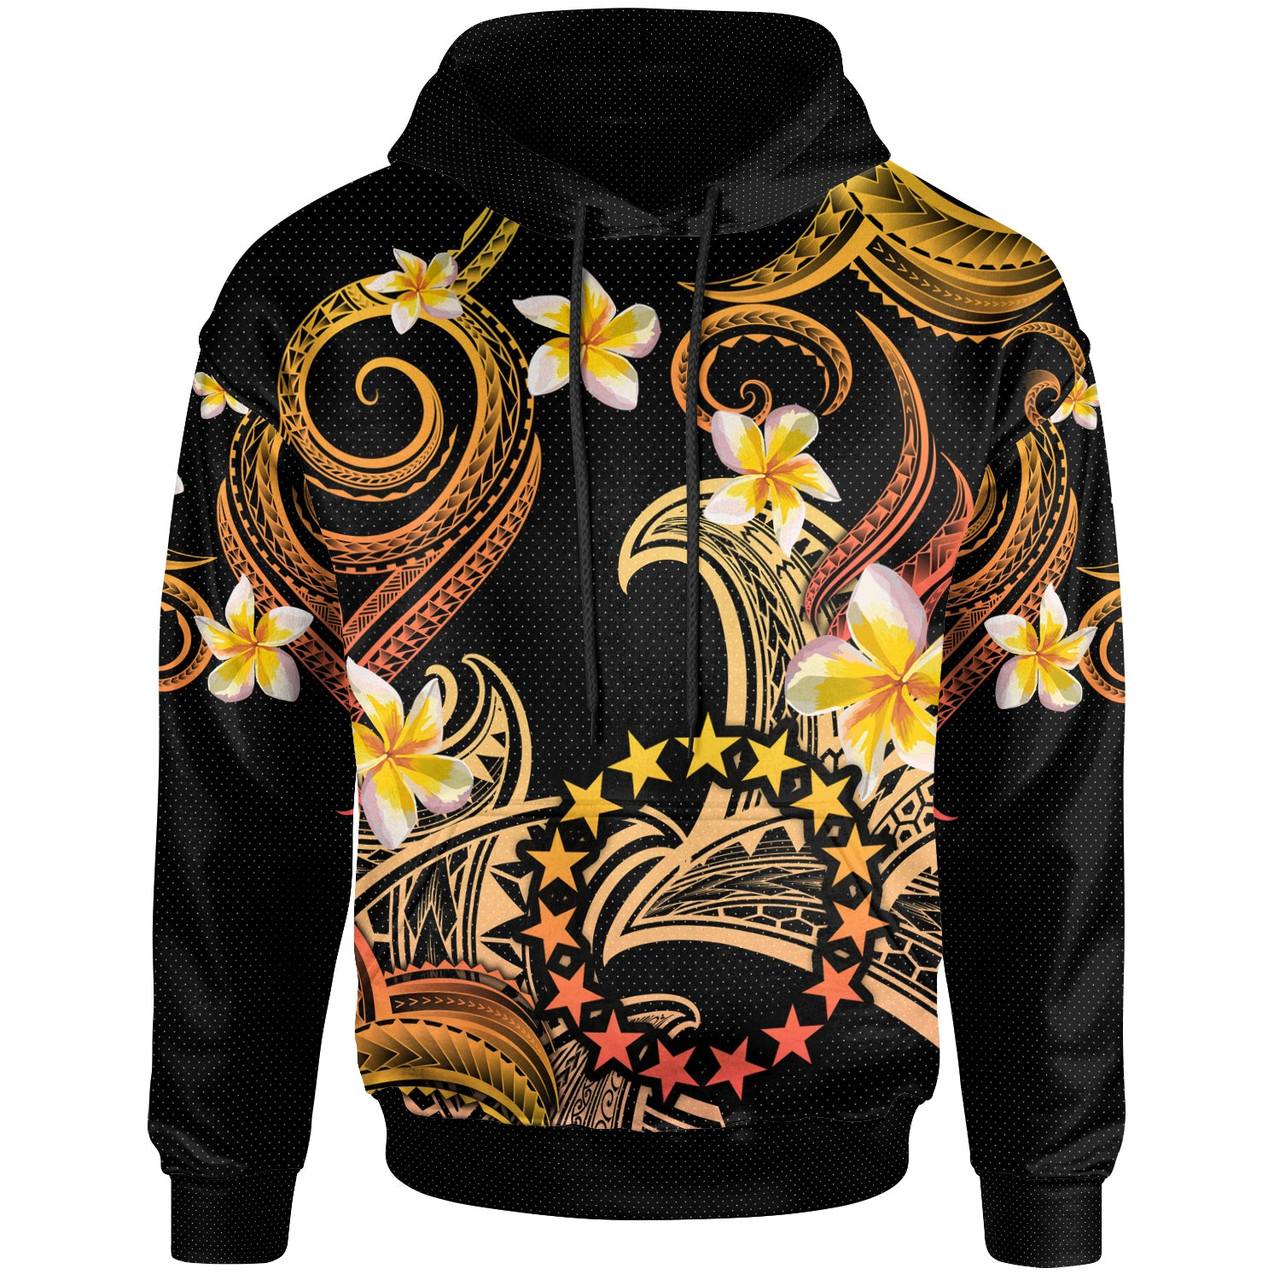 Cook Islands Hoodie - Custom Personalised Polynesian Waves with Plumeria Flowers (Orange)